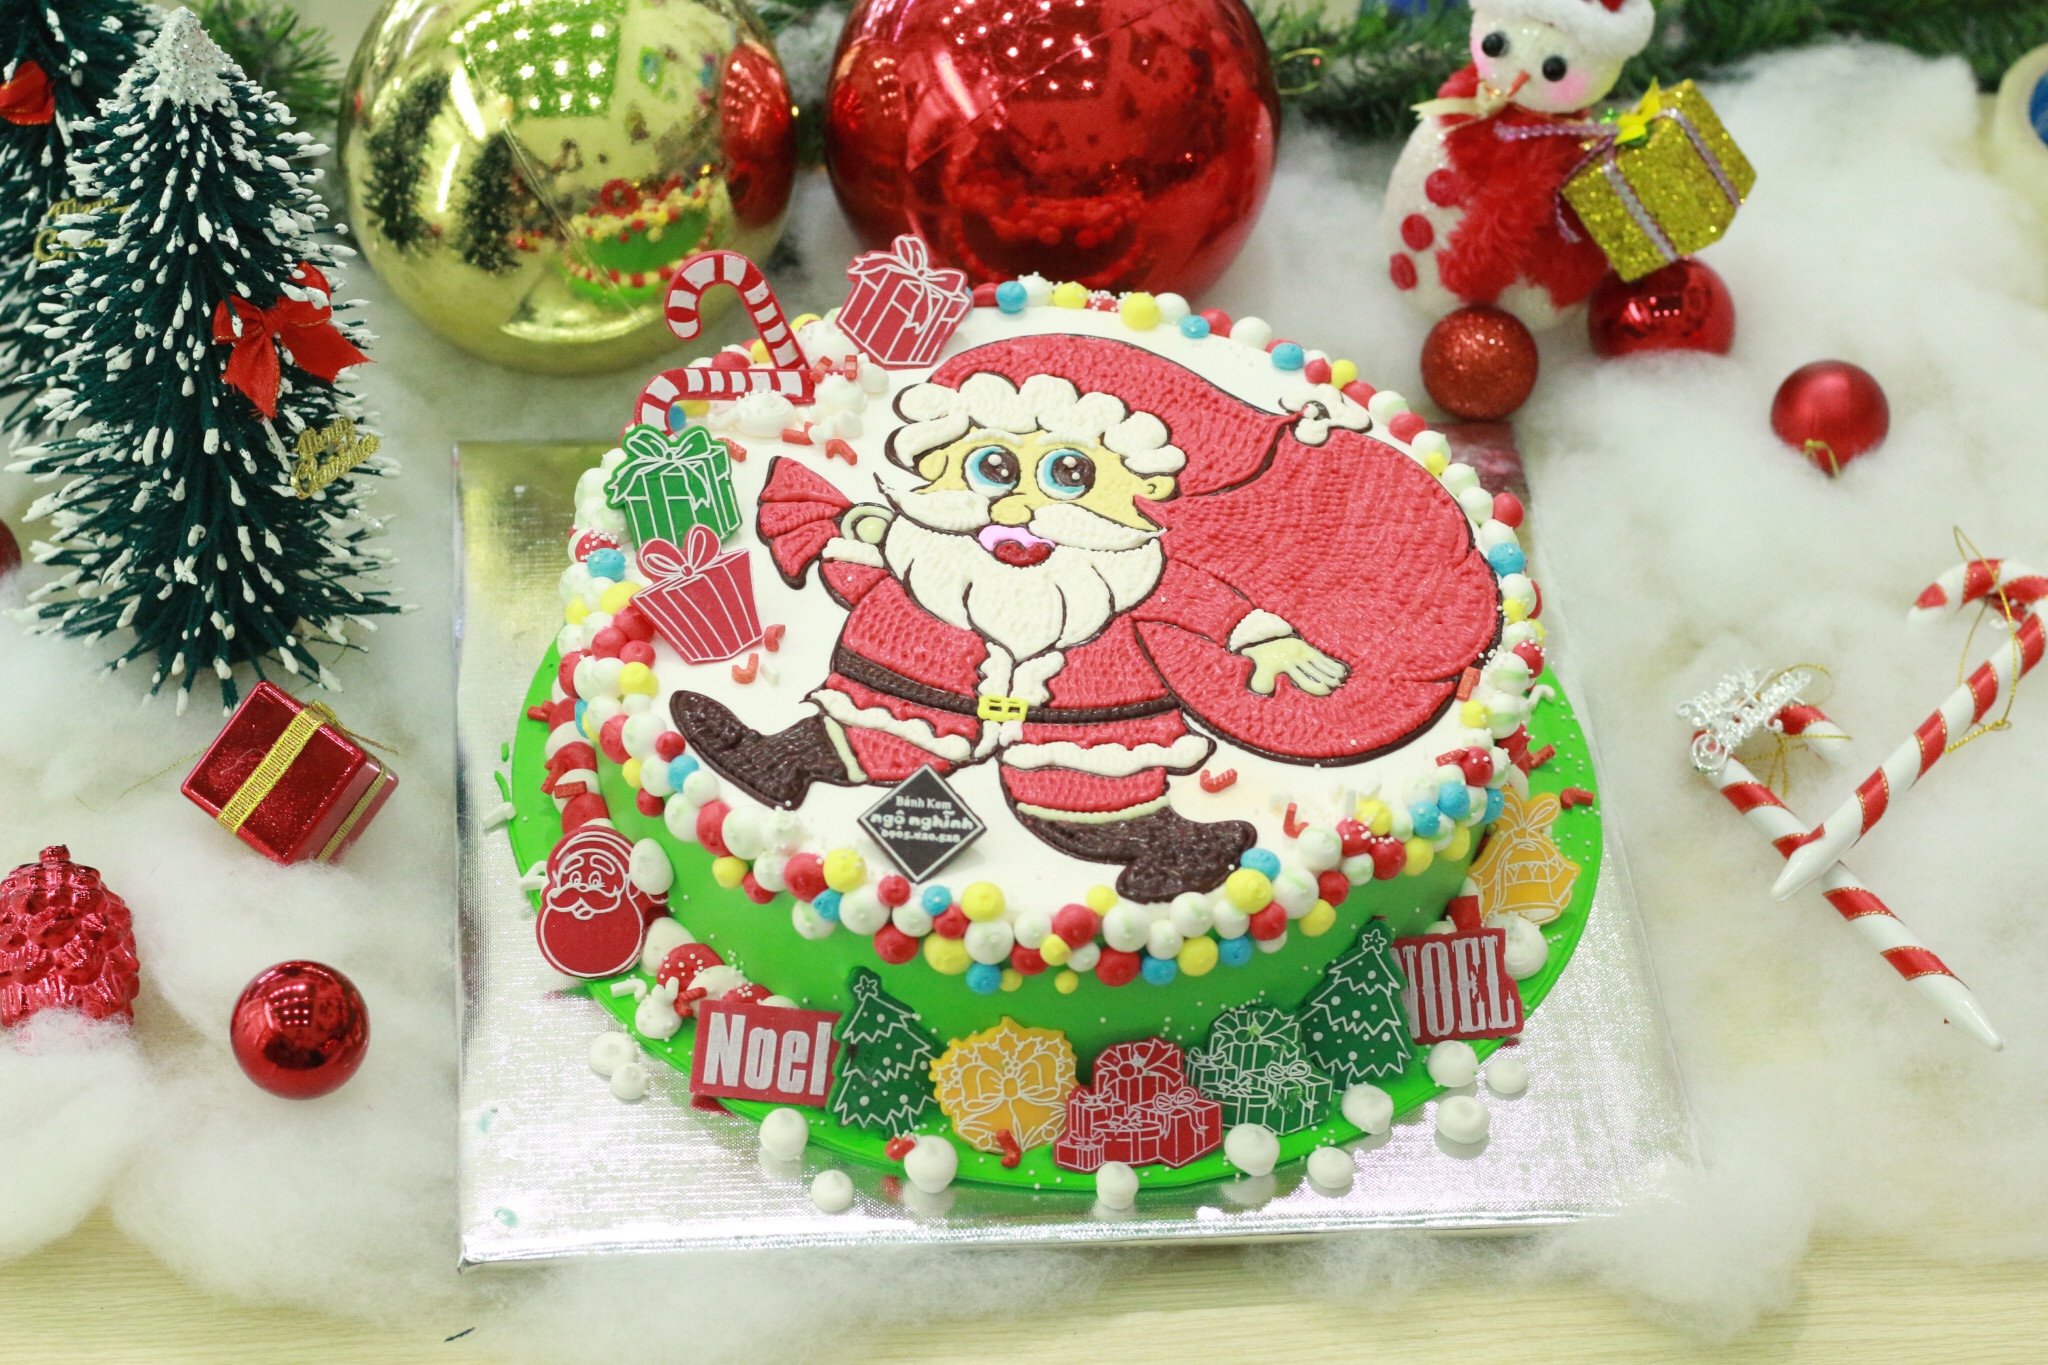 Bánh kem Ông già Noel là một trong những đặc trưng và cực kỳ ấn tượng trong mùa Giáng sinh. Hãy xem qua những hình ảnh về các chiếc bánh kem Ông già Noel được tạo hình tỉ mỉ, đầy màu sắc và ngon miệng như thế nào nhé!